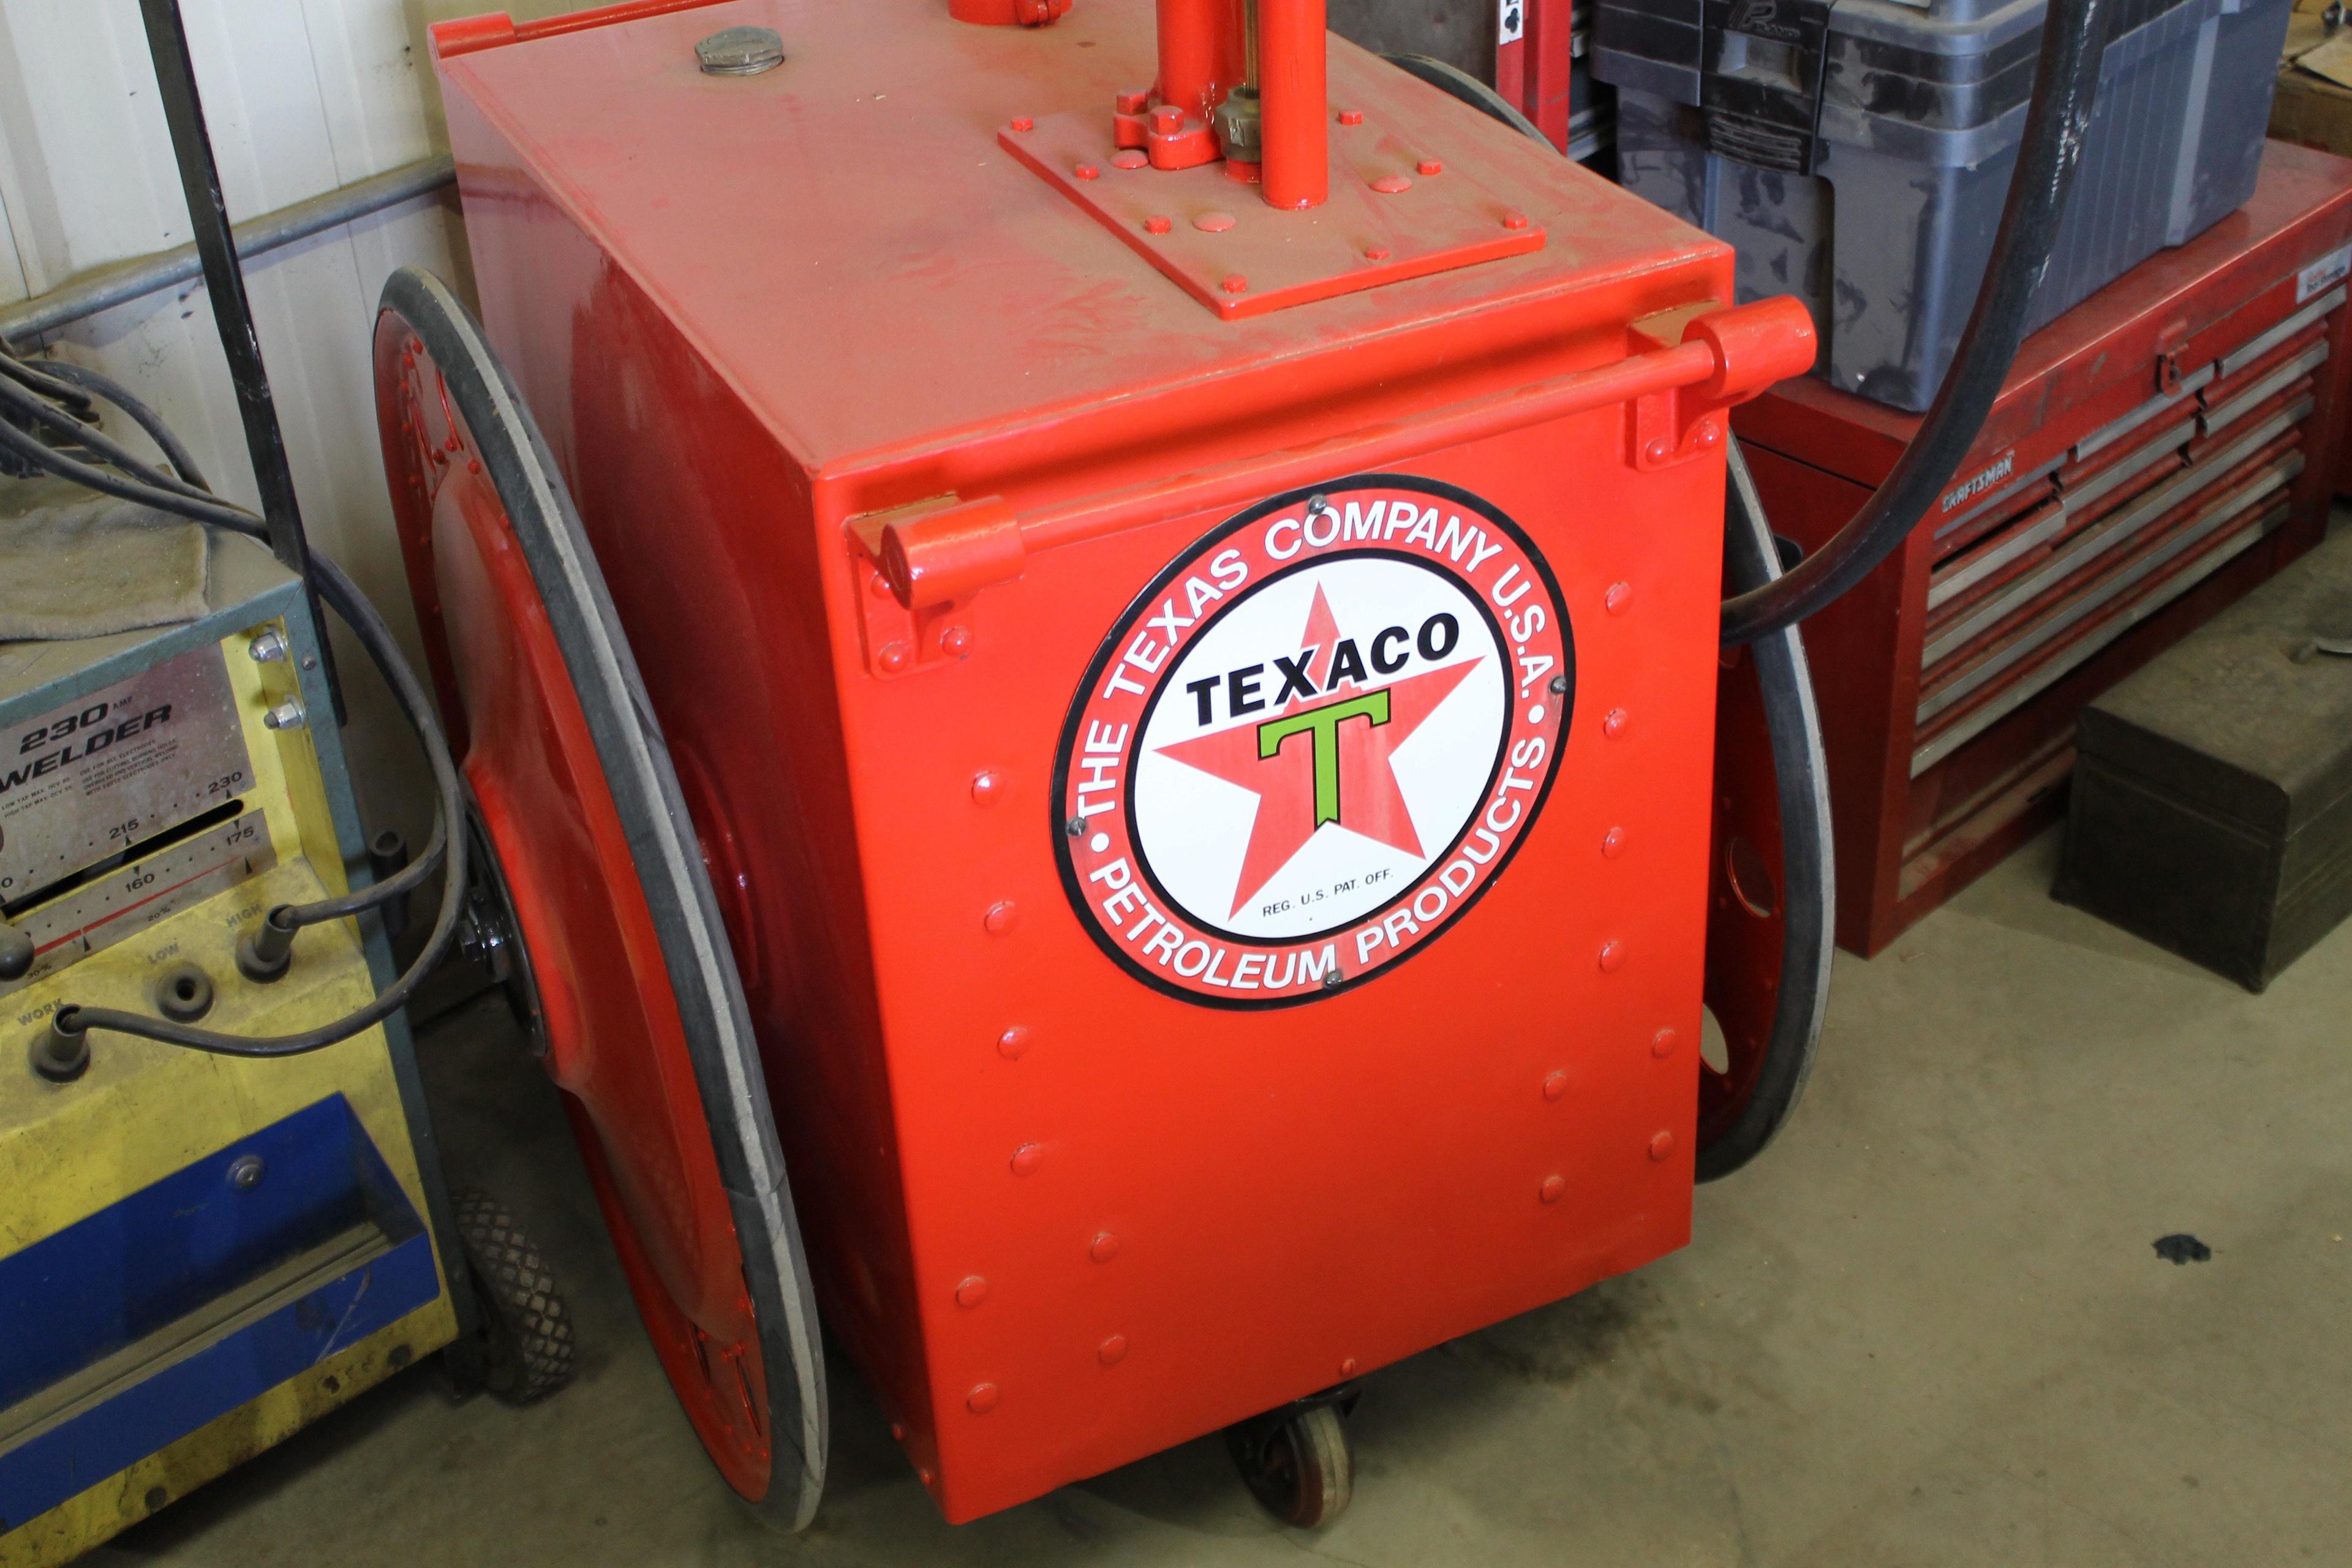 Vintage Texaco Fuel Pump